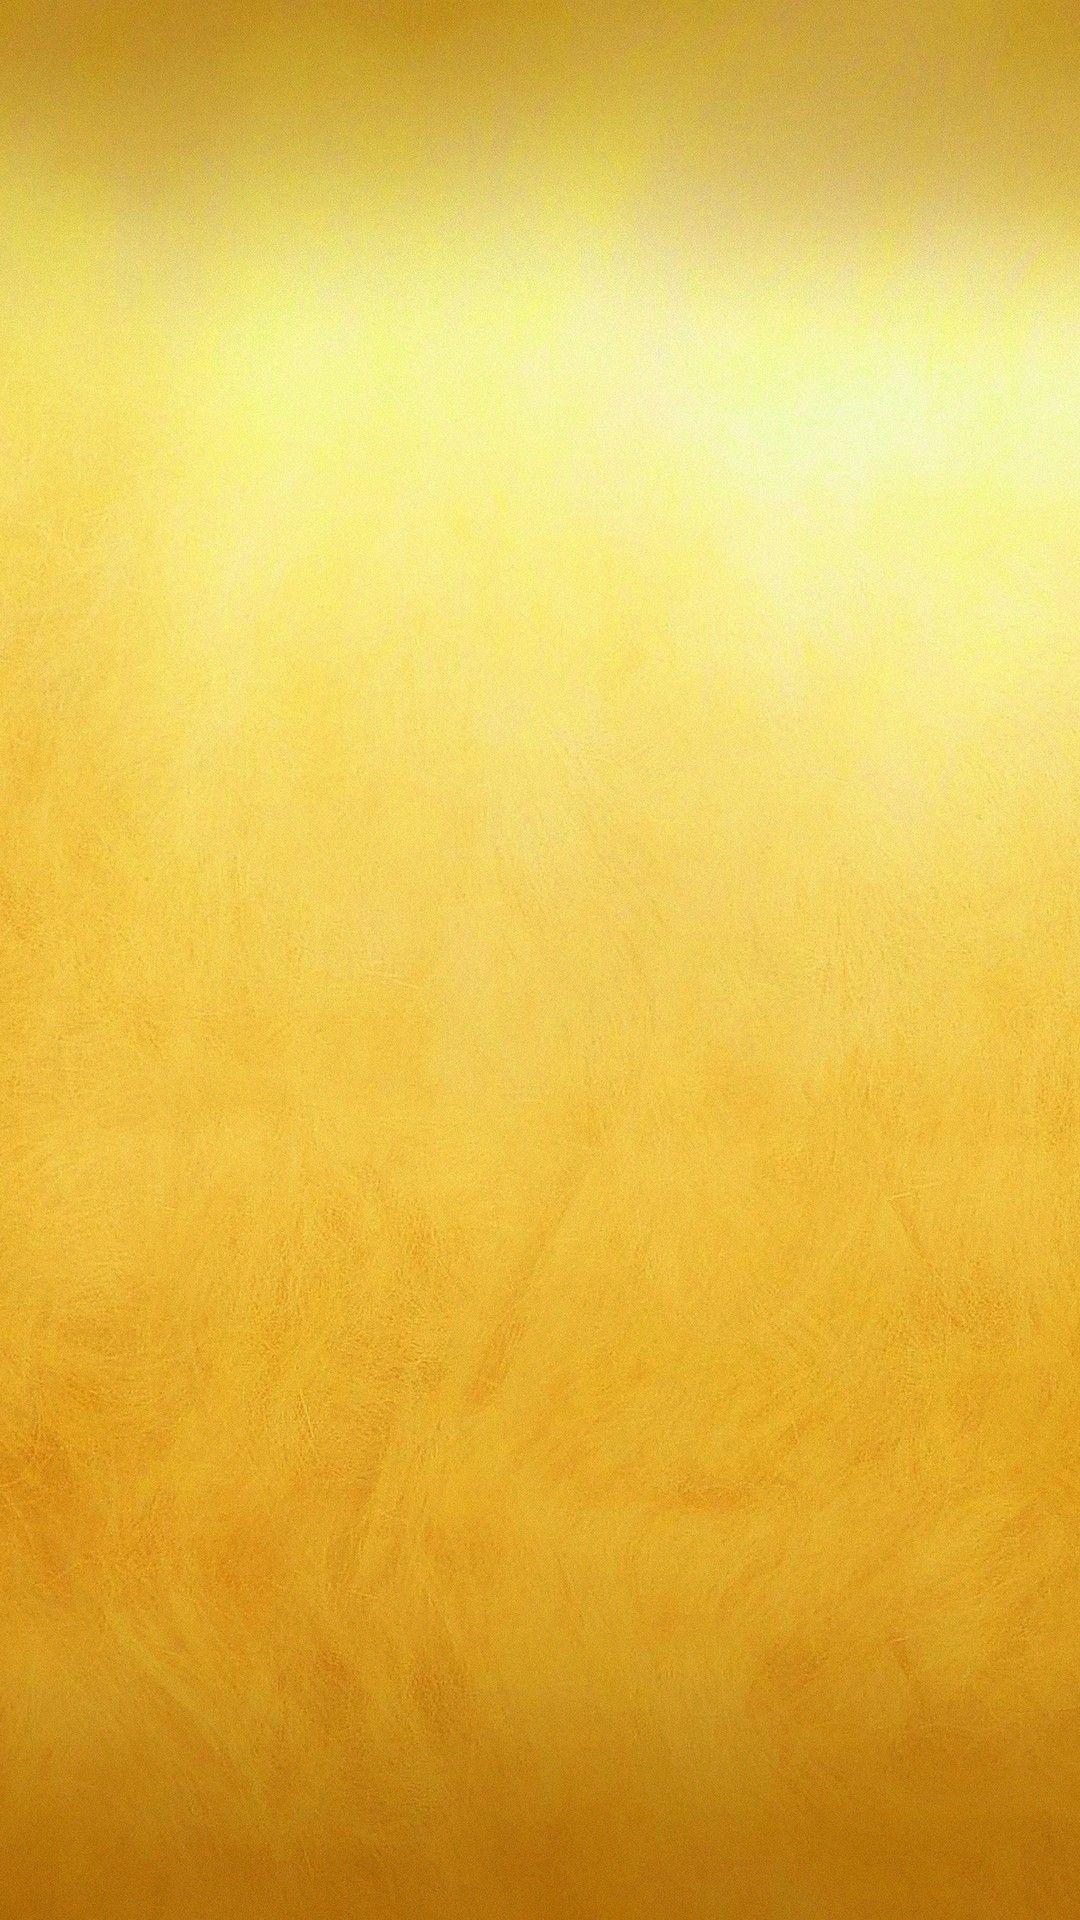 iPhone X Wallpaper Plain Gold iPhone Wallpaper. Gold wallpaper android, Gold wallpaper, Best iphone wallpaper